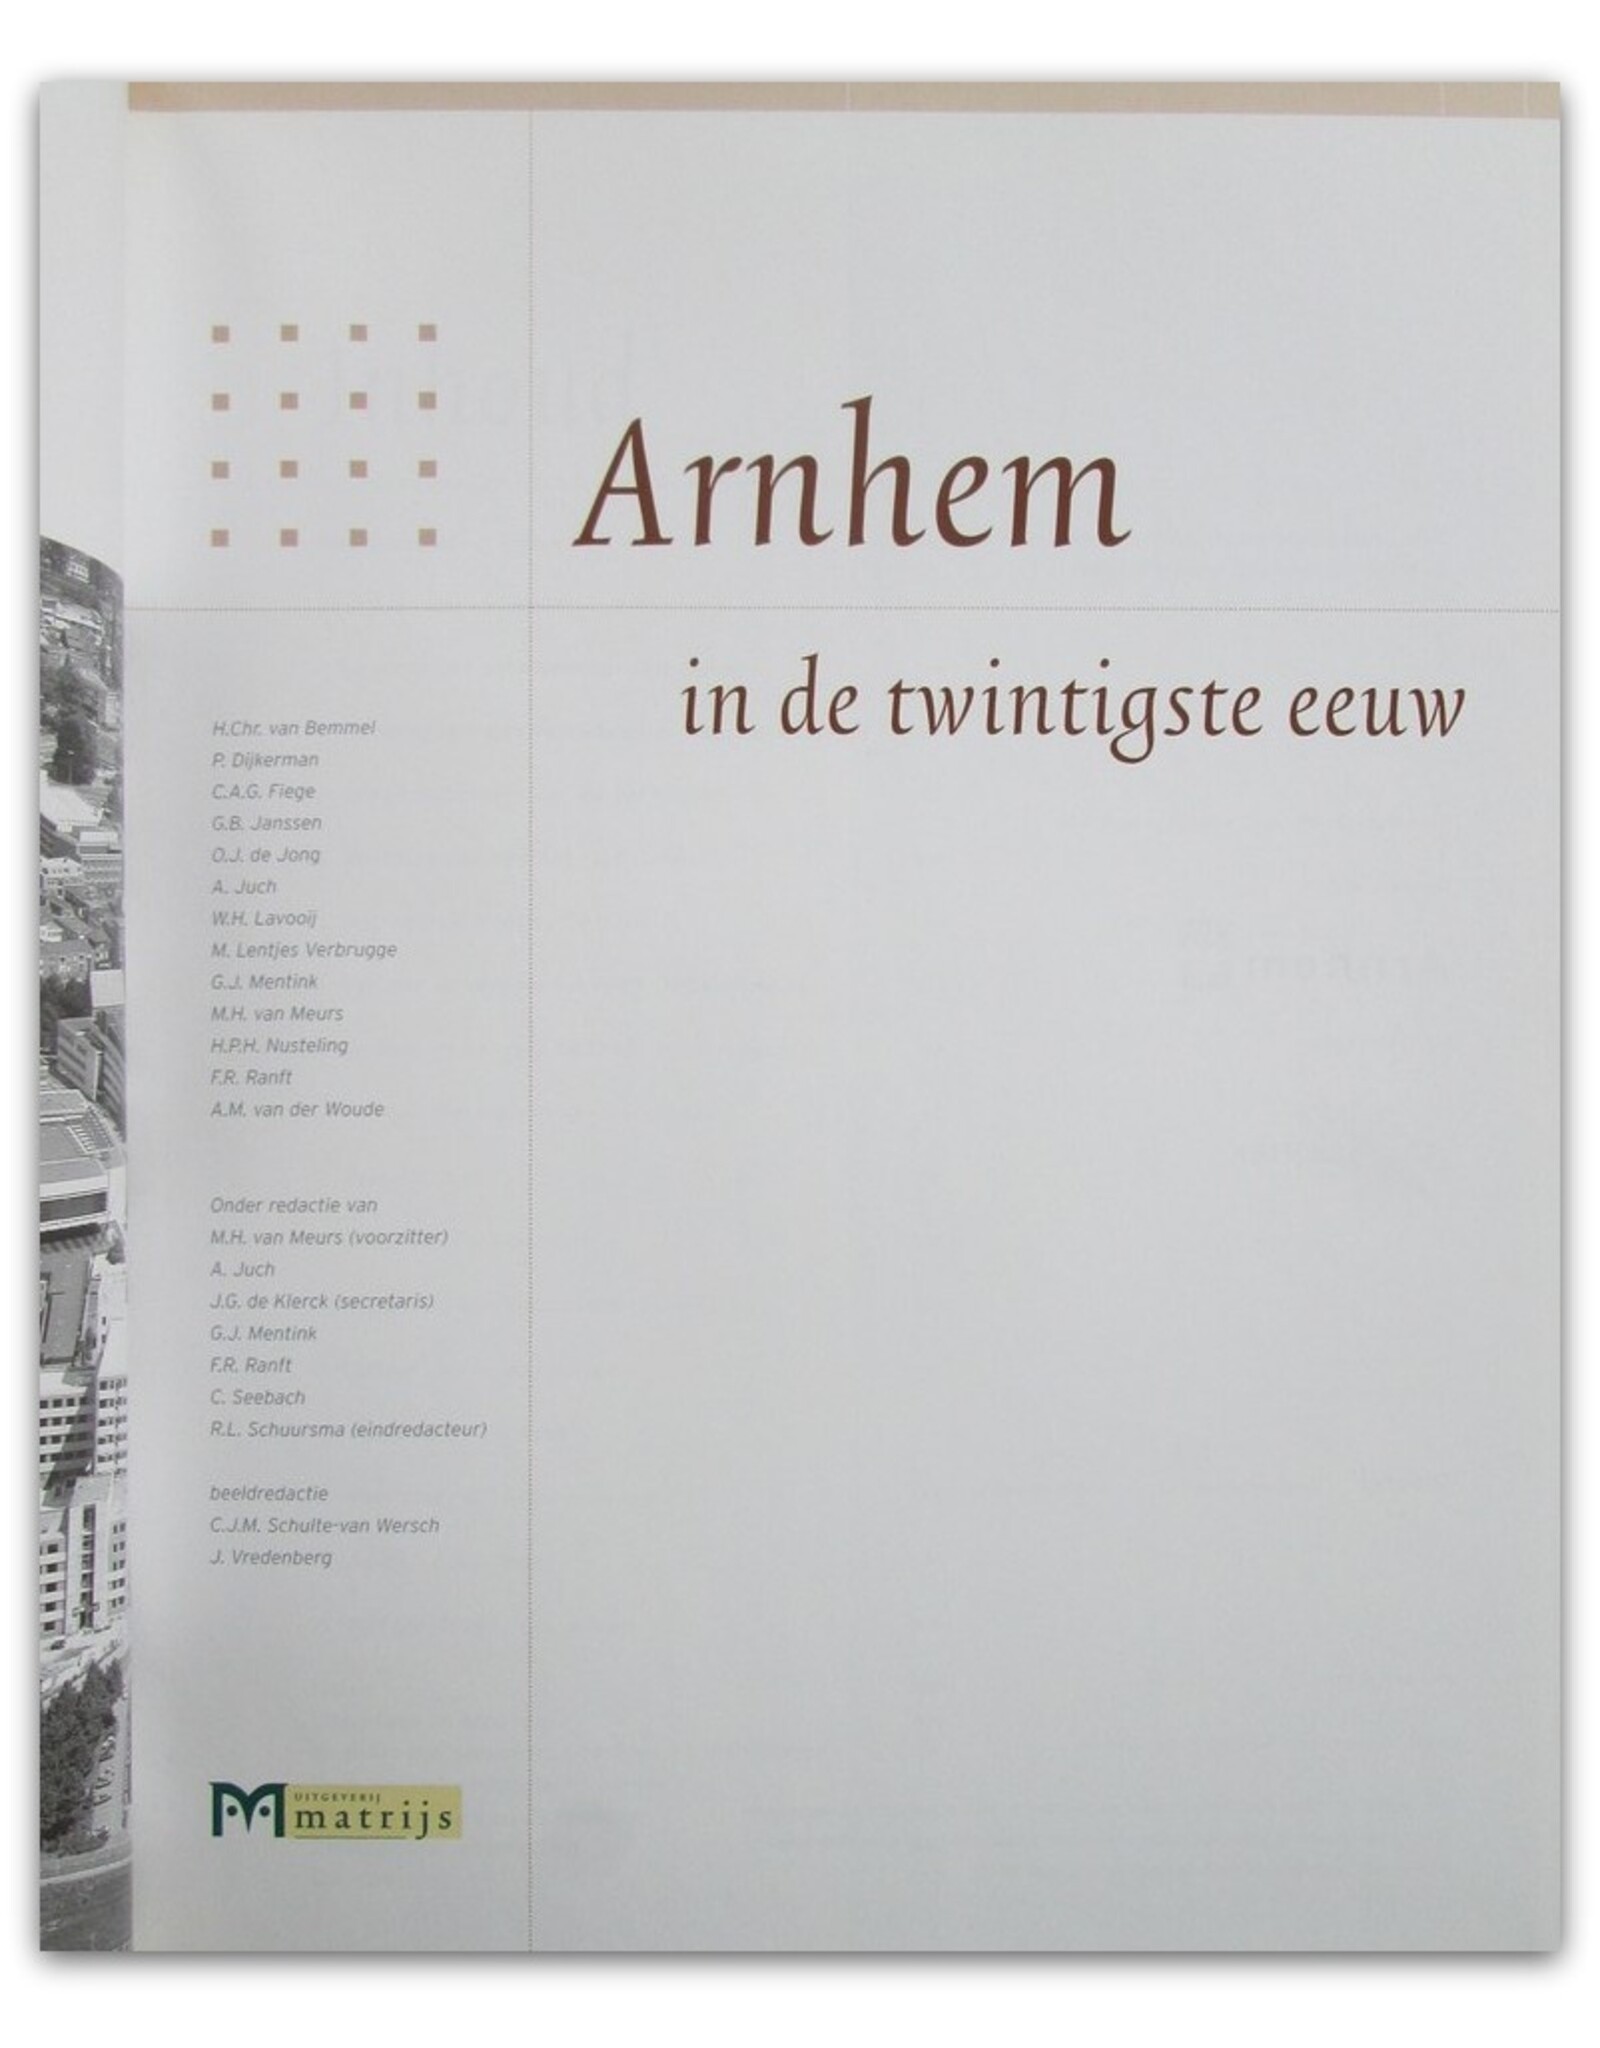 [Matrijs] M.H. van Meurs [ed.] - Arnhem in de twintigste eeuw